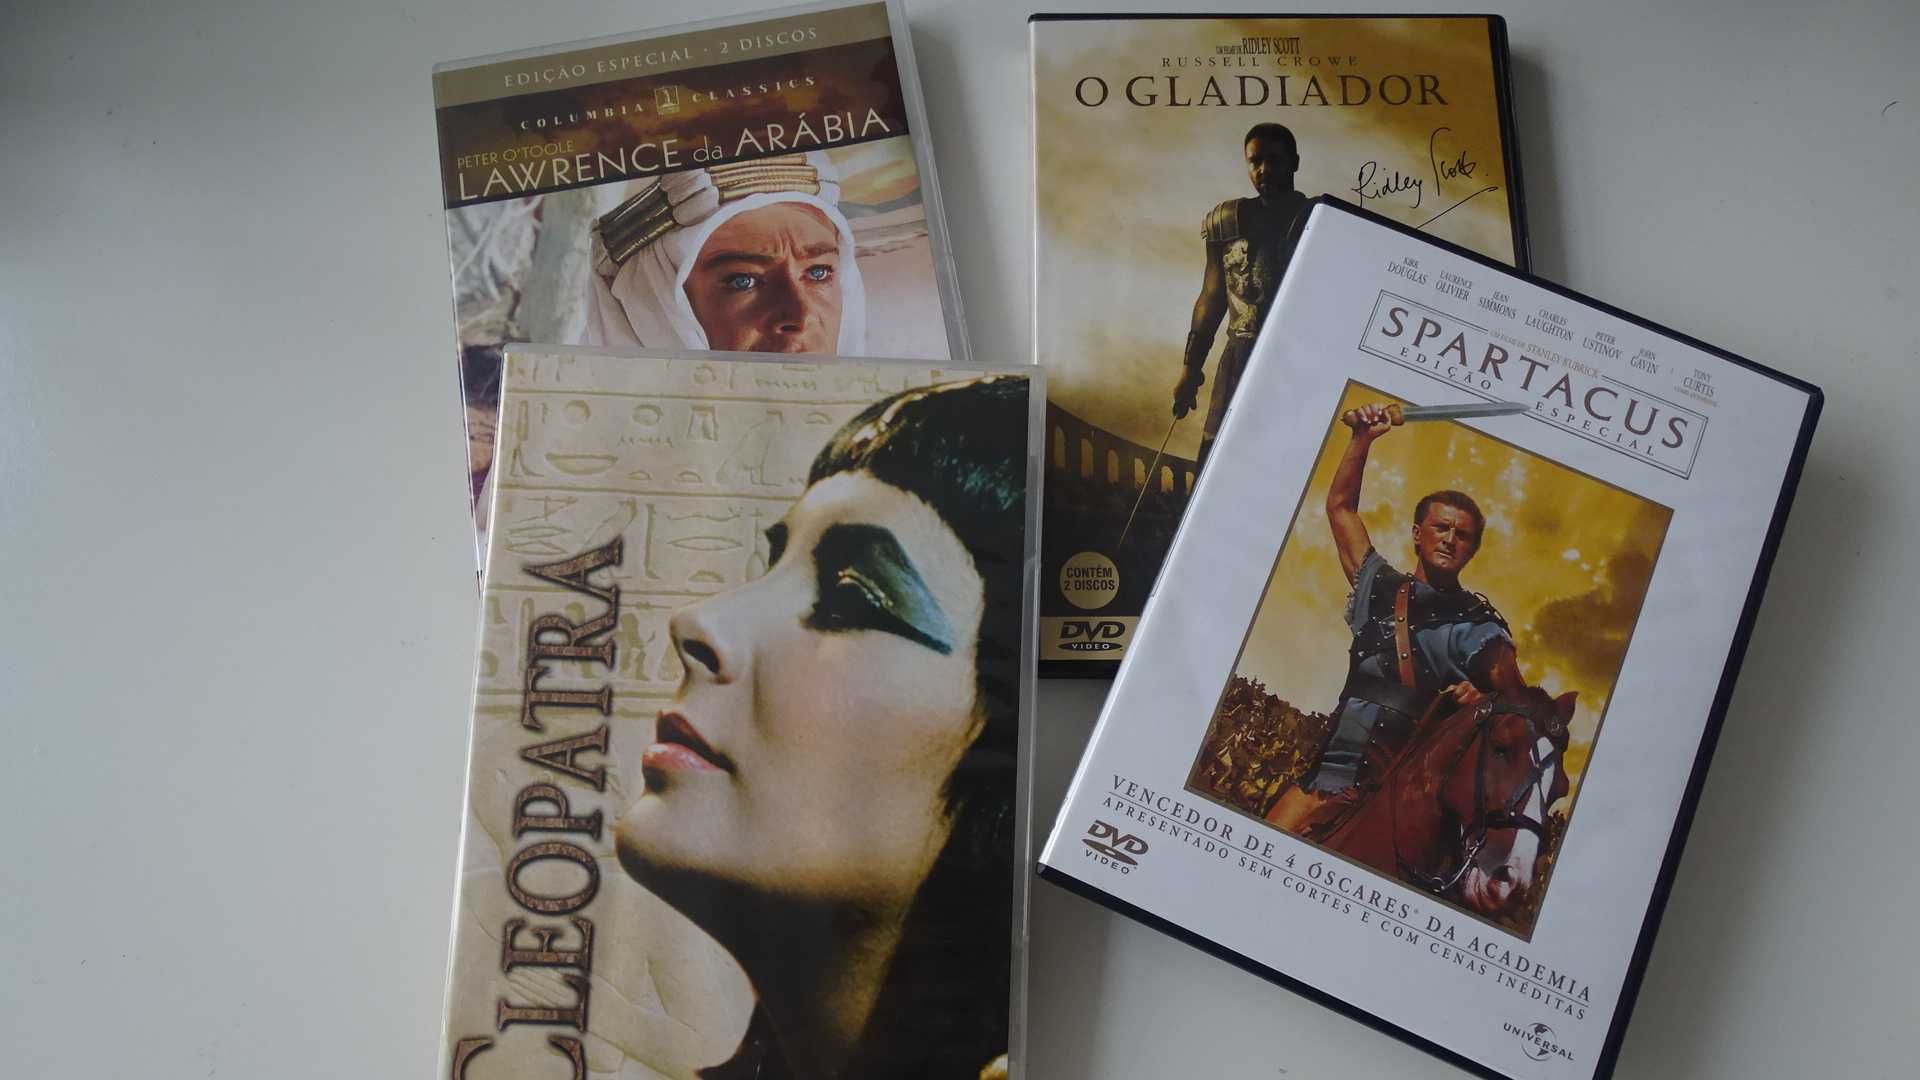 DVDs Épicos - Edição especial - Oscares